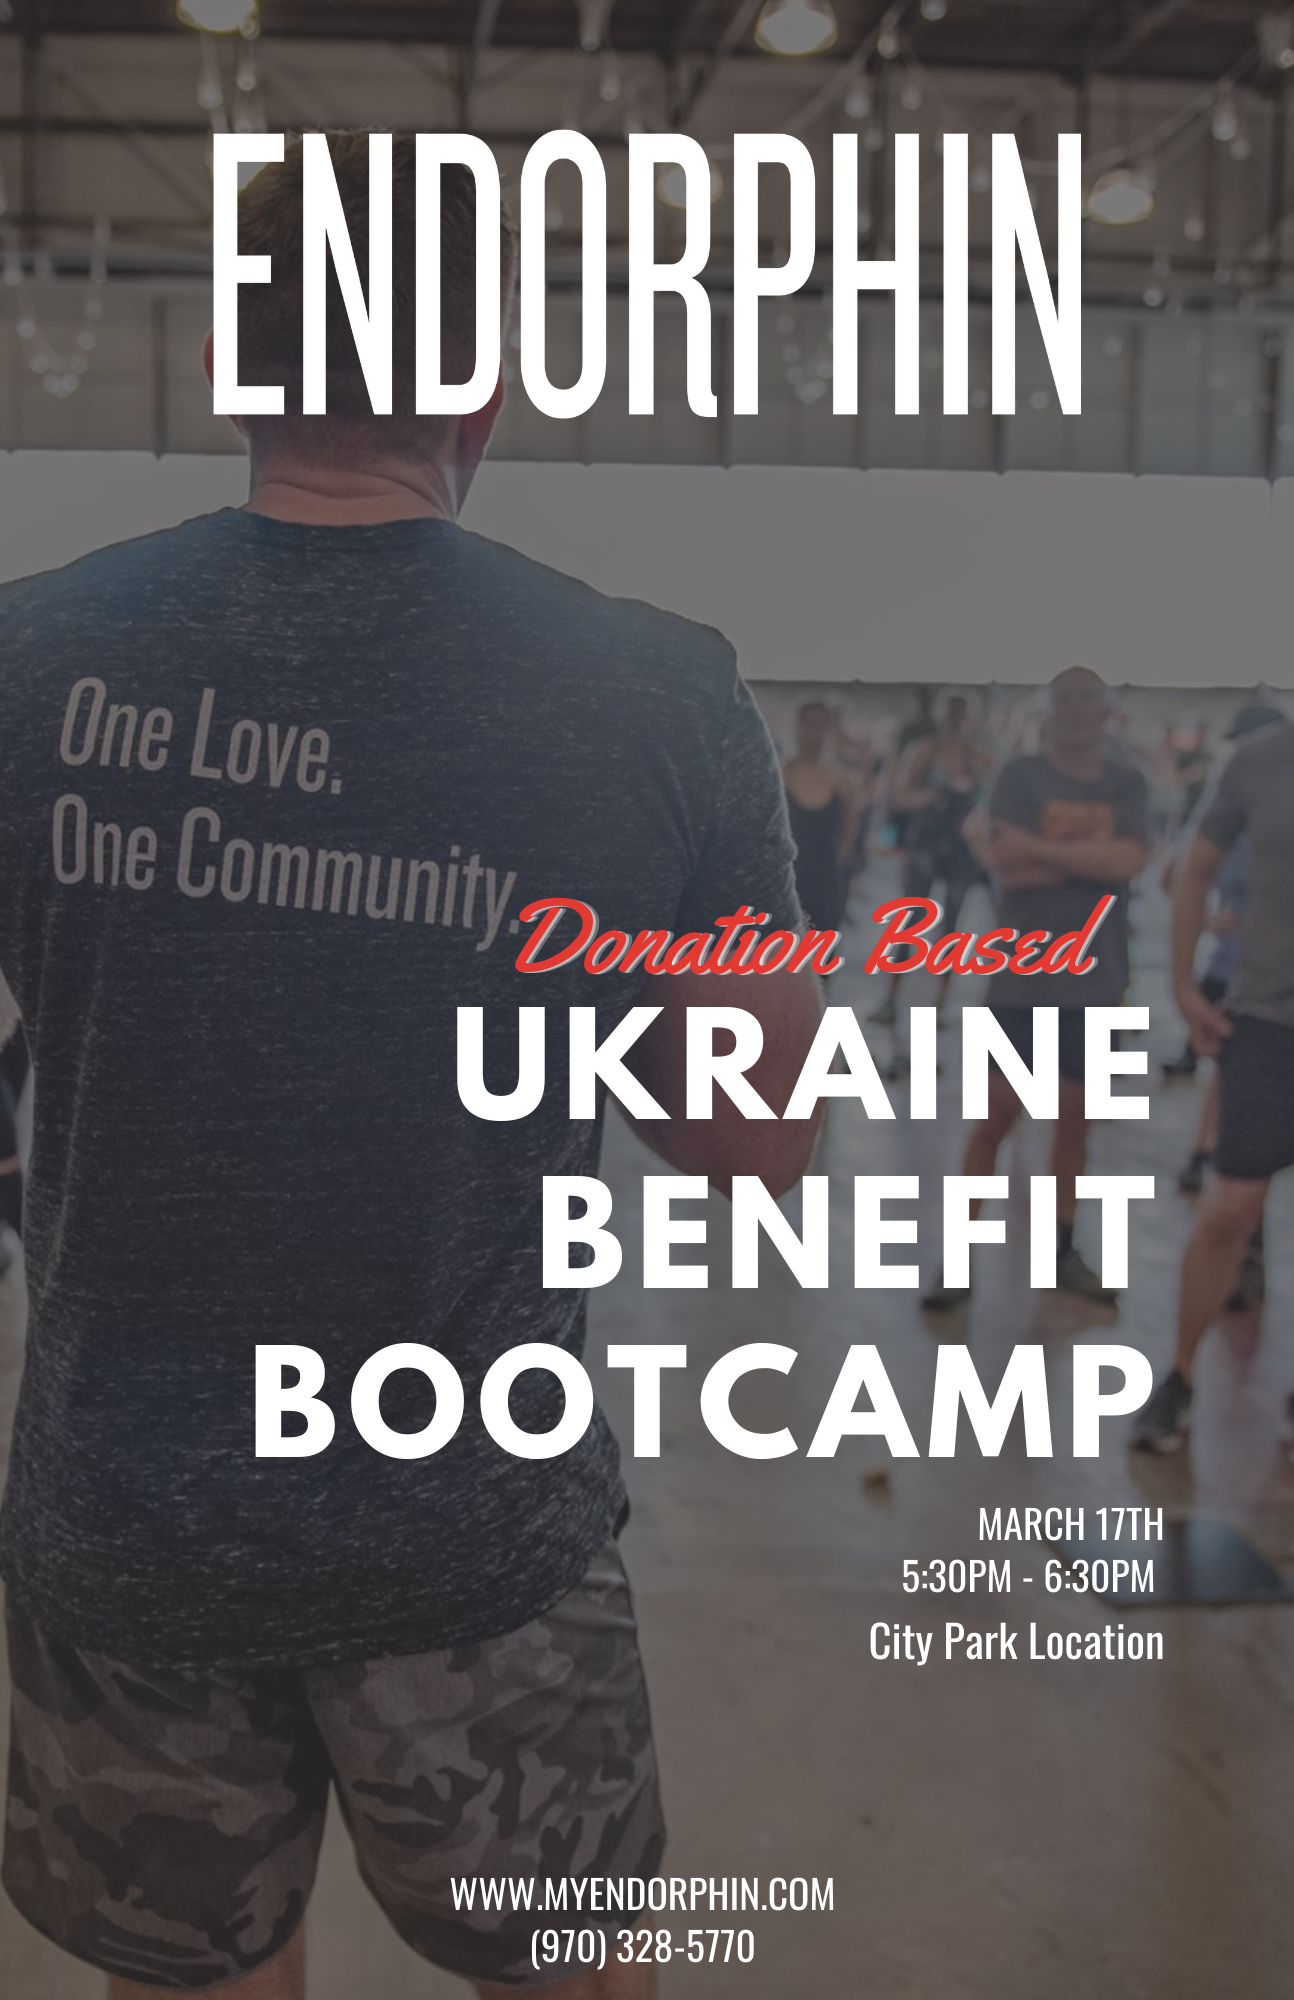 
Ukraine Benefit Bootcamp